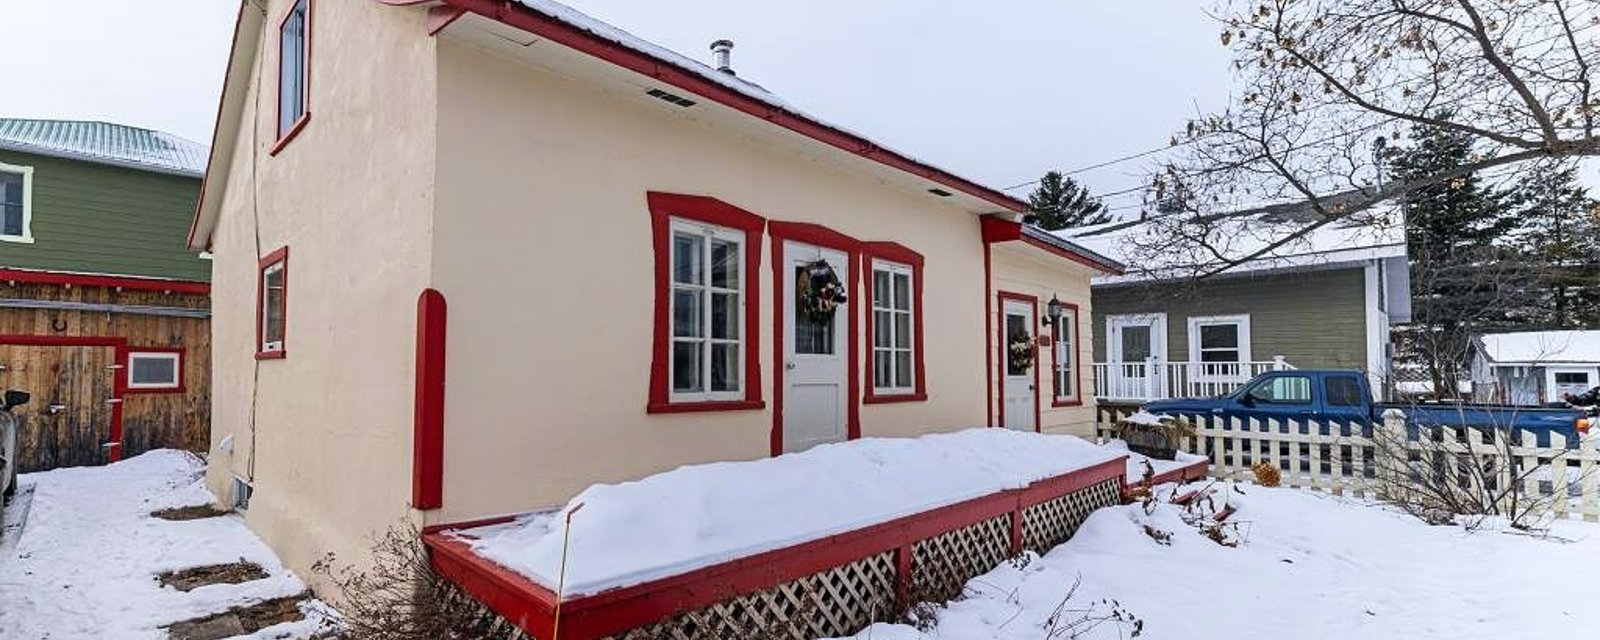 Adorable maison de tradition québécoise à 239 000 $ 